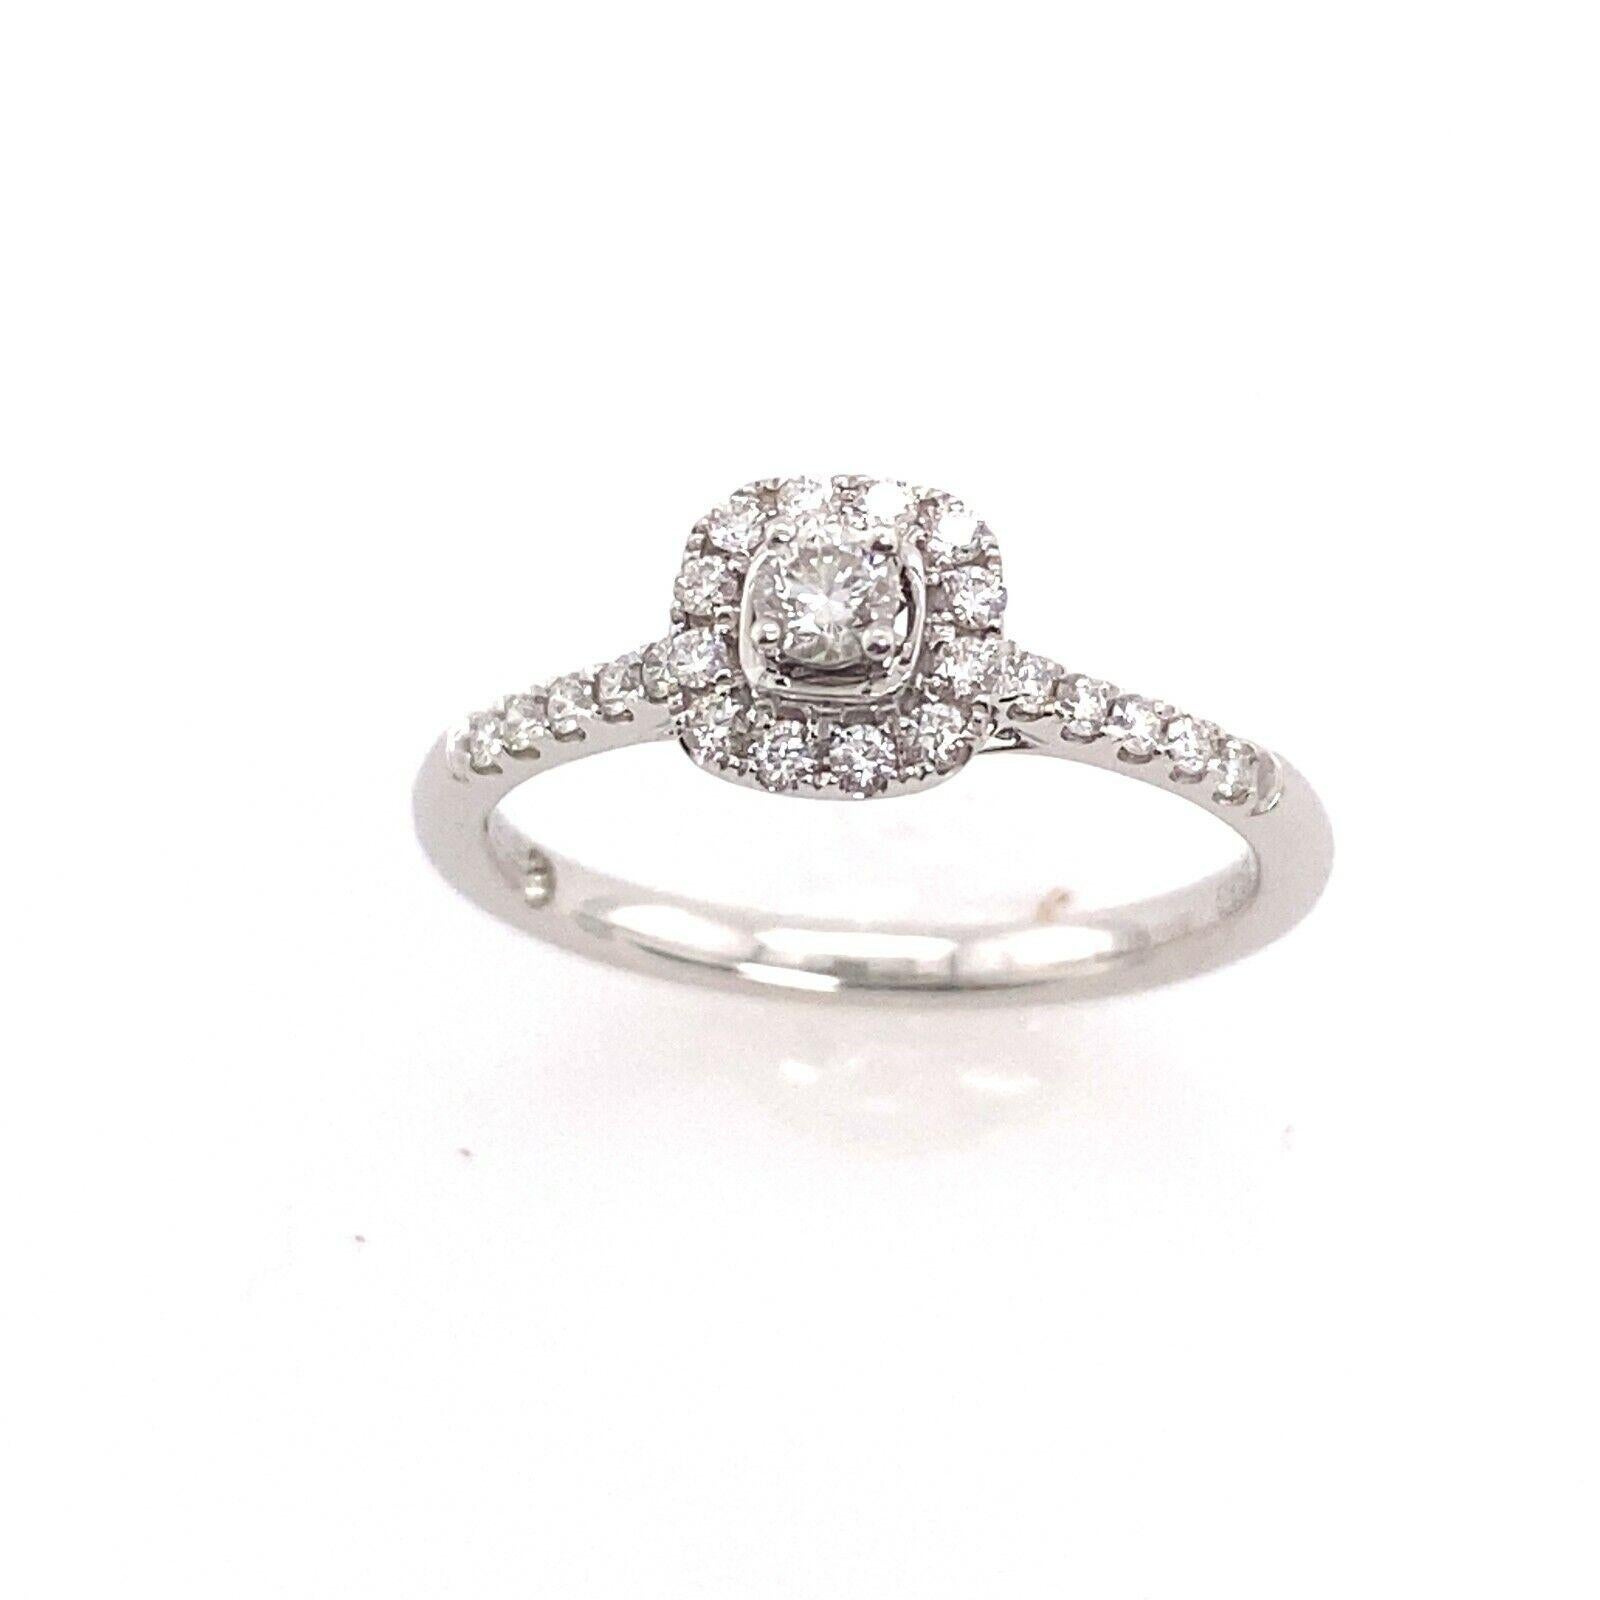 Ensemble Halo en or blanc 18ct de forme coussin serti de 0.35ct de diamants

Cette magnifique bague en forme de halo est le symbole parfait de votre engagement amoureux. La bague est sertie dans un anneau en or blanc 18ct, entouré de magnifiques